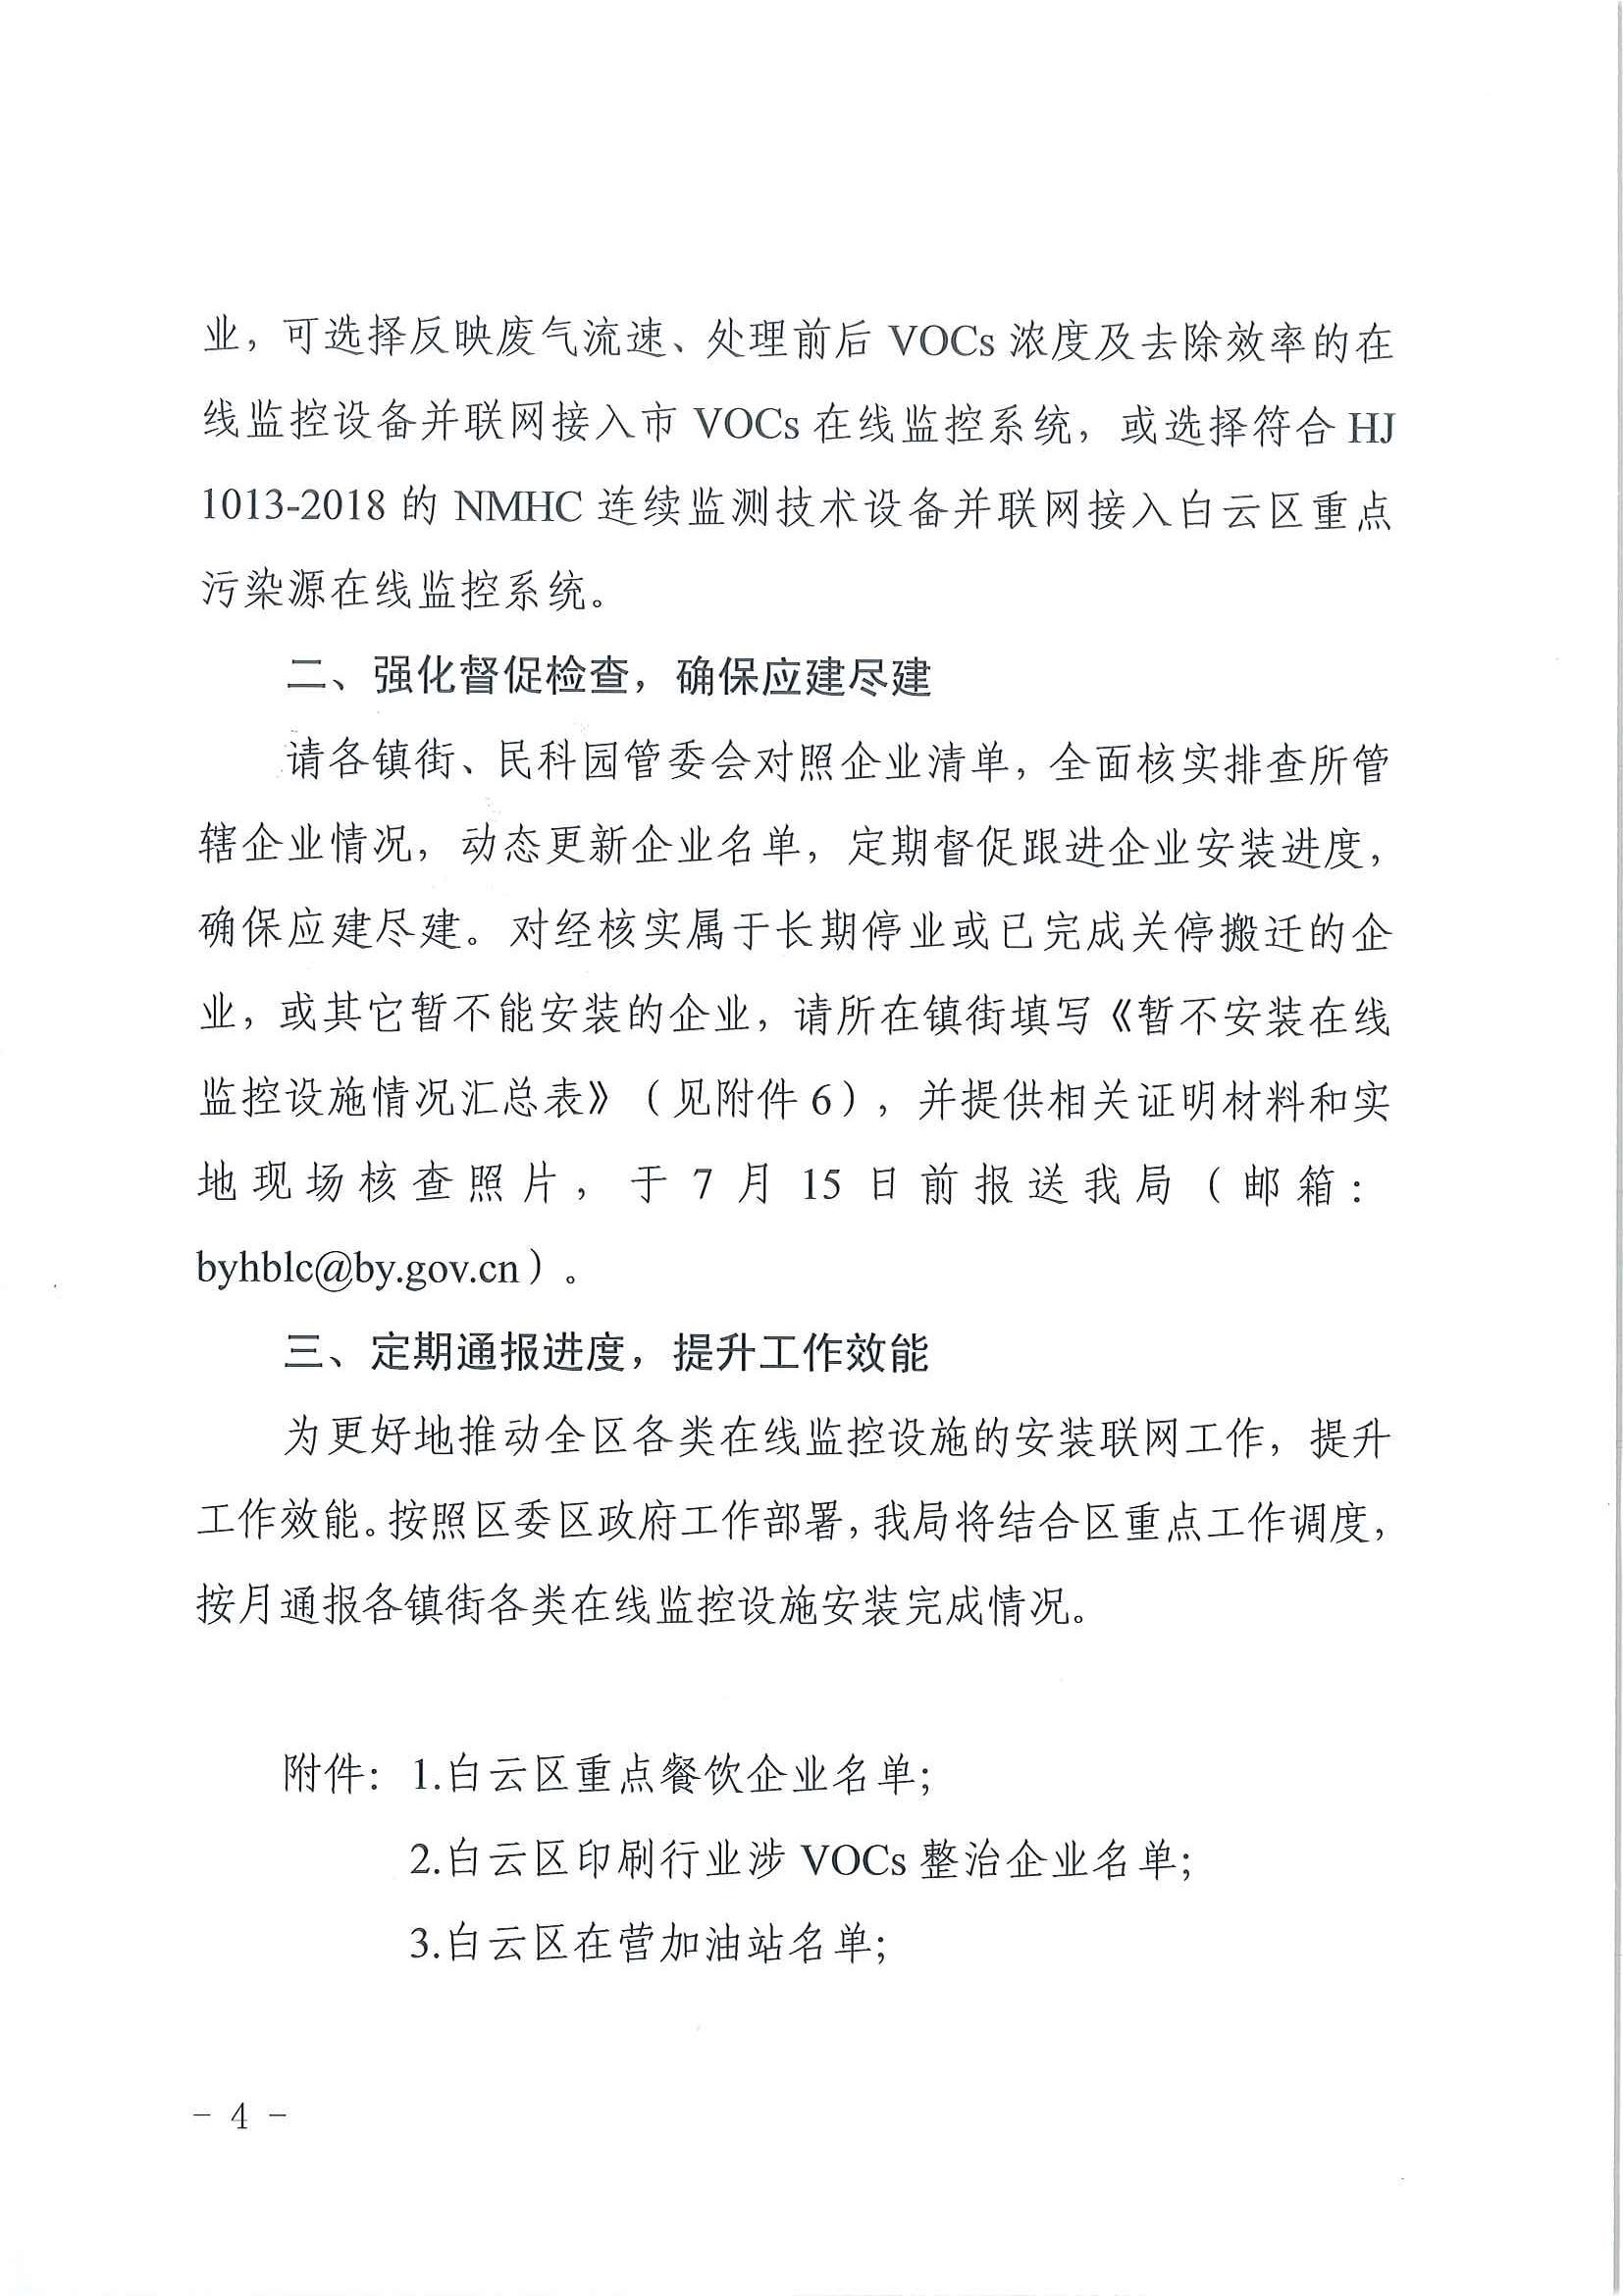 广州市生态环境局白云分局关于推进污染源在线监控设施建设工作的通知(1)_页面_4.jpg